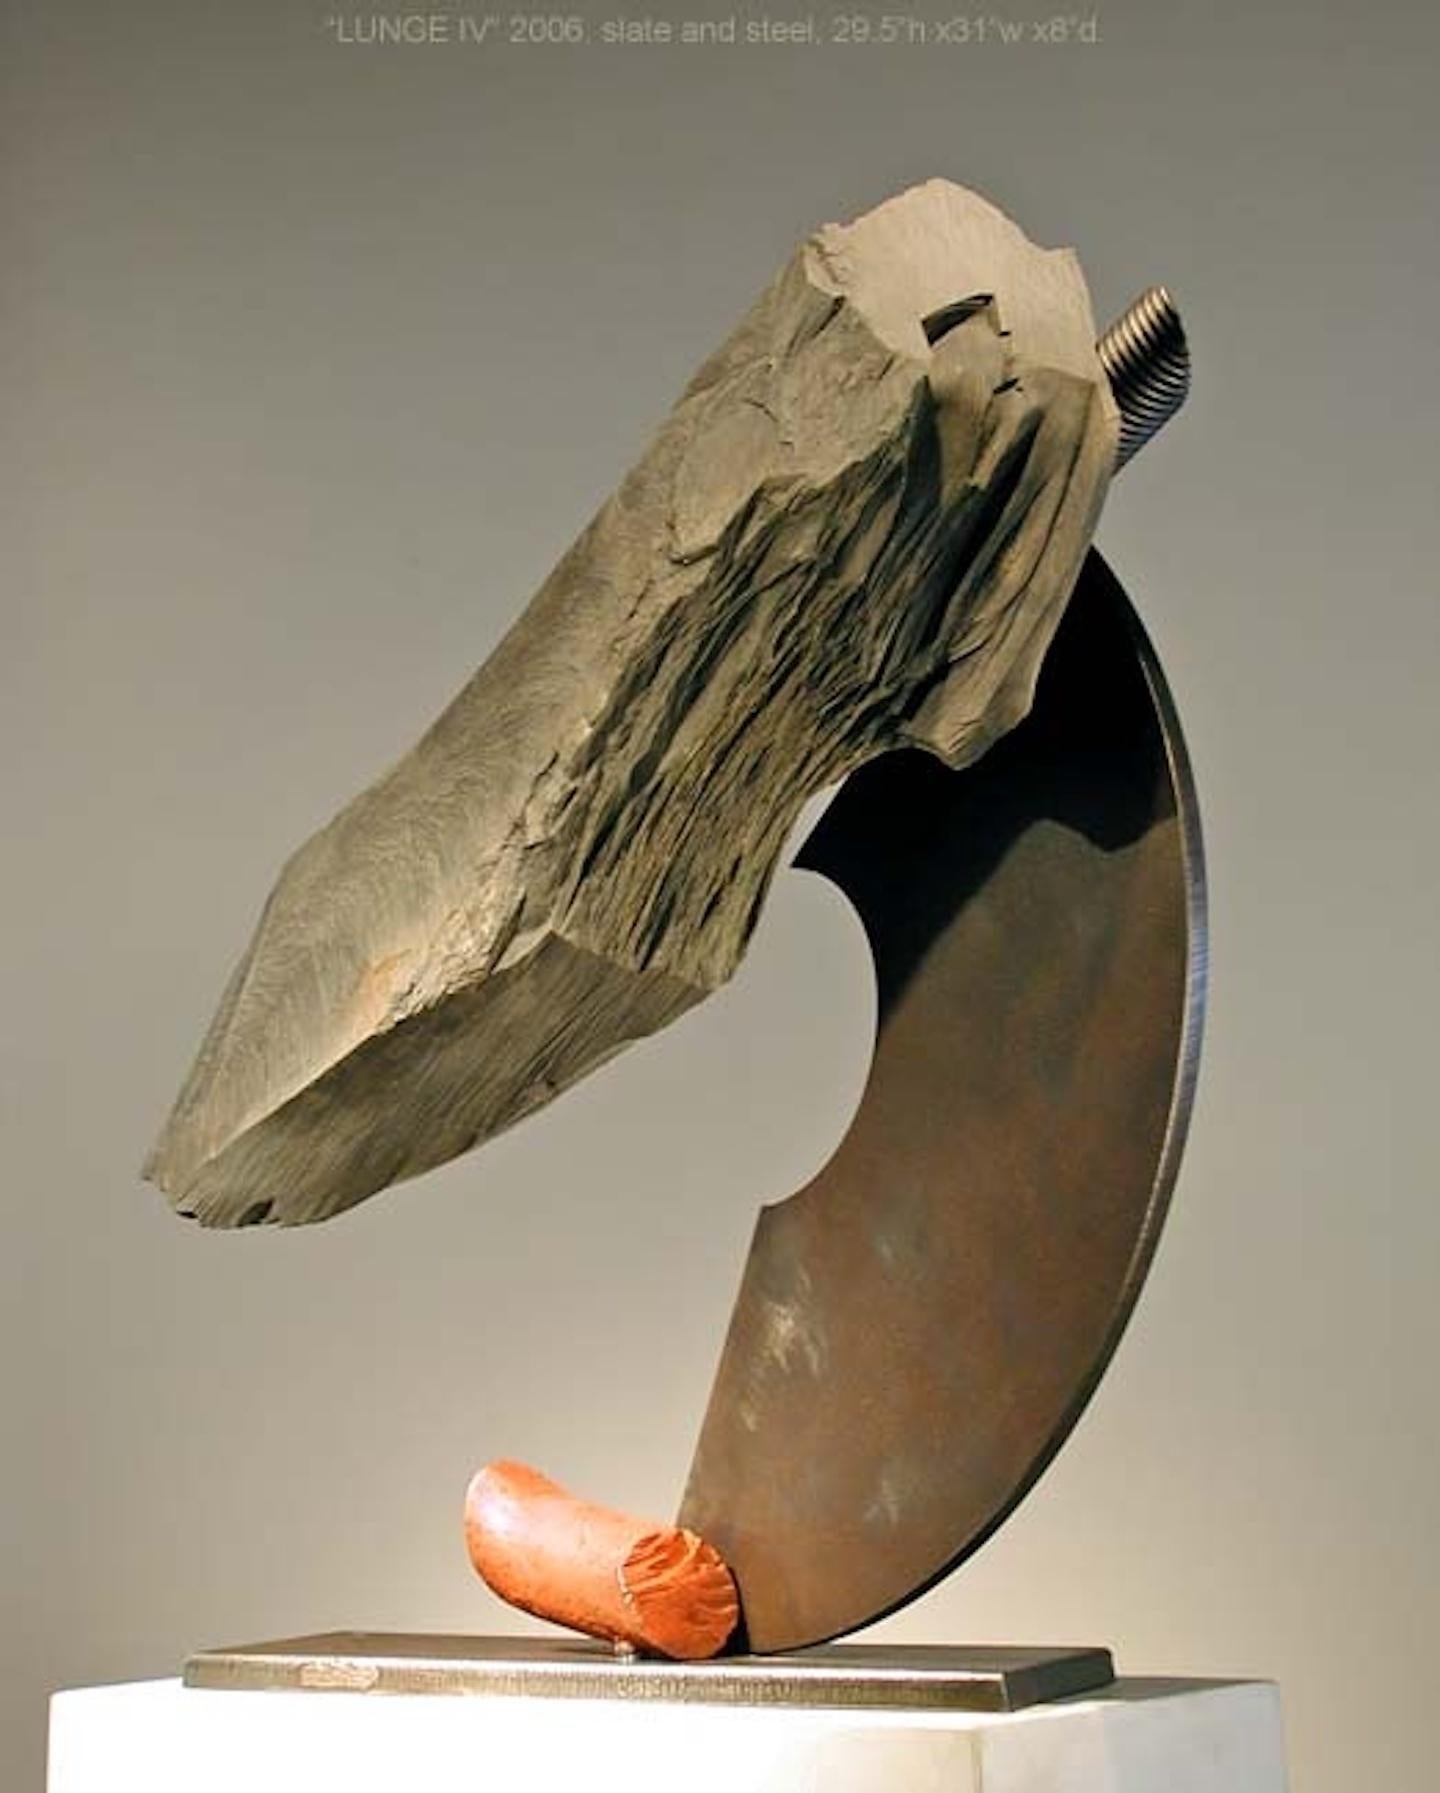 John Van Alstine - Lunge IV (Red Tail), Sculpture 2006